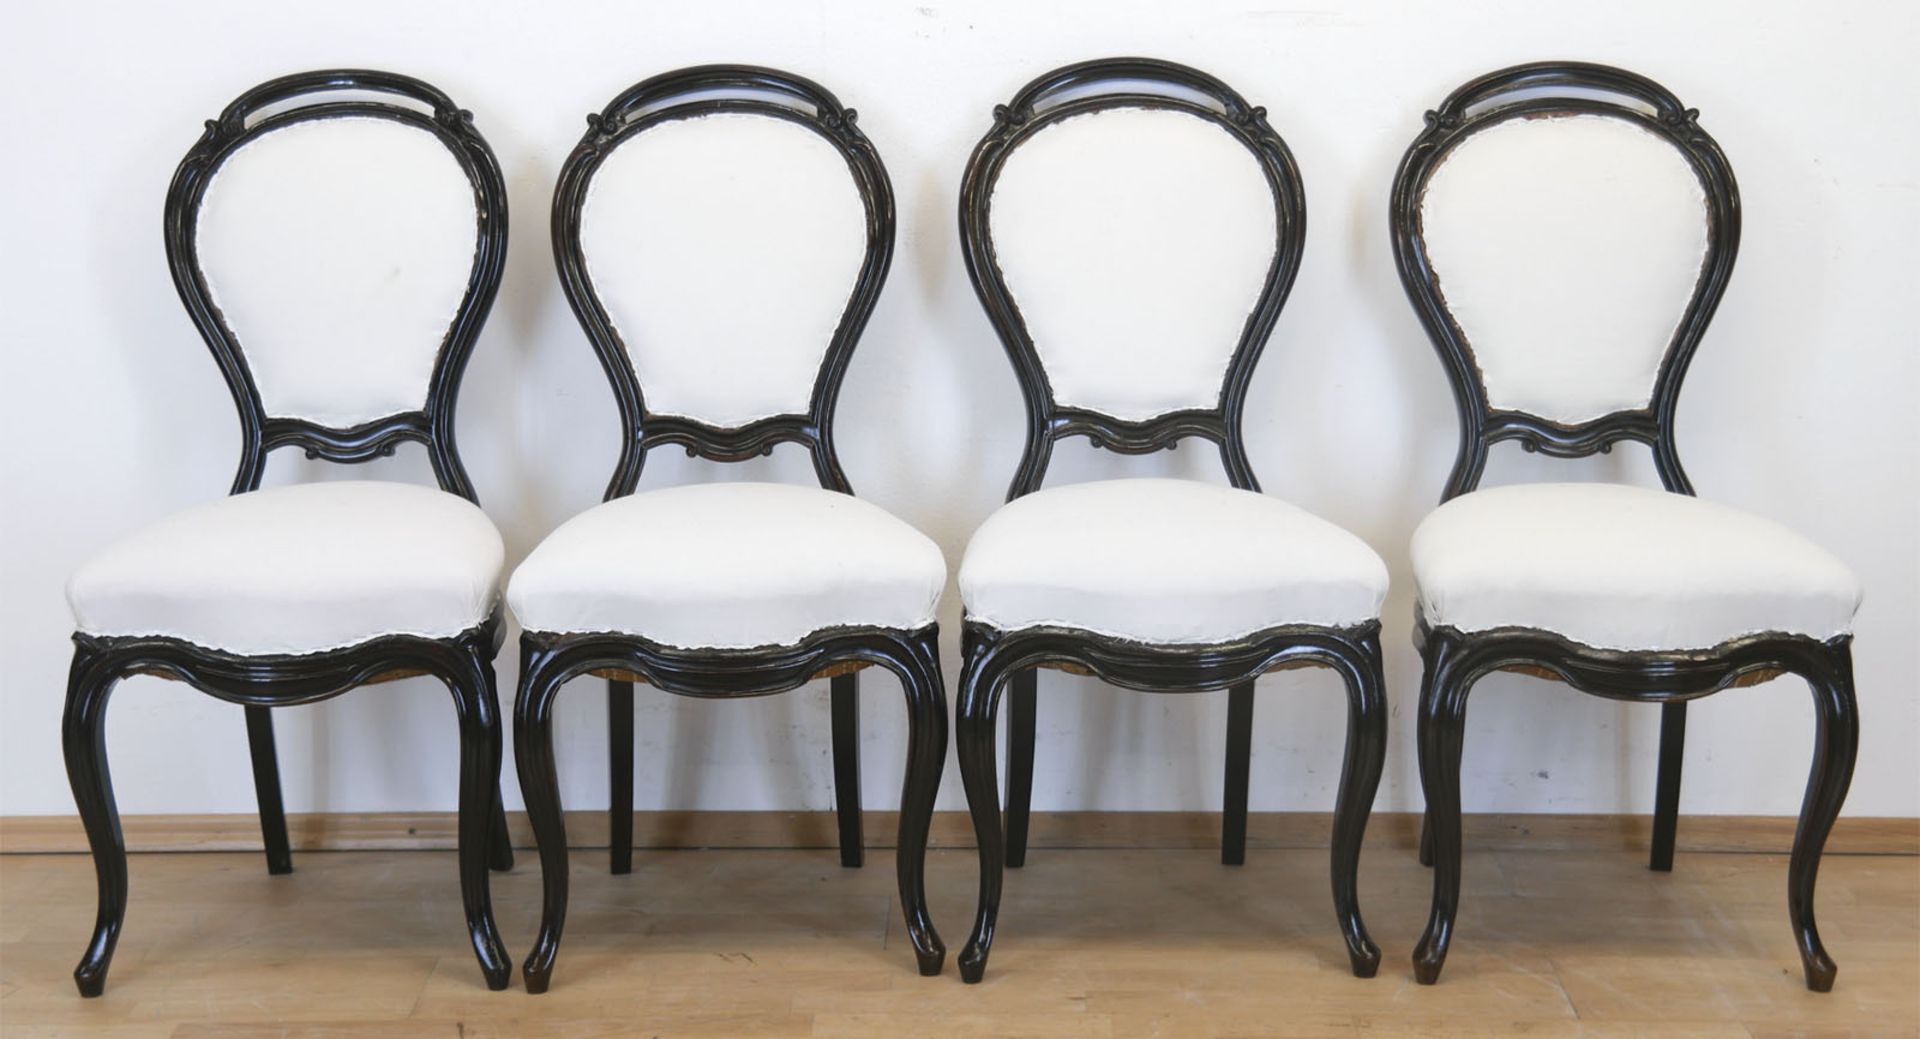 4 Louis-Philippe-Stühle, um 1860, Nußbaum, dunkel gefaßt,gepolsterter Sitz mit Nesselbezug, Ballonl